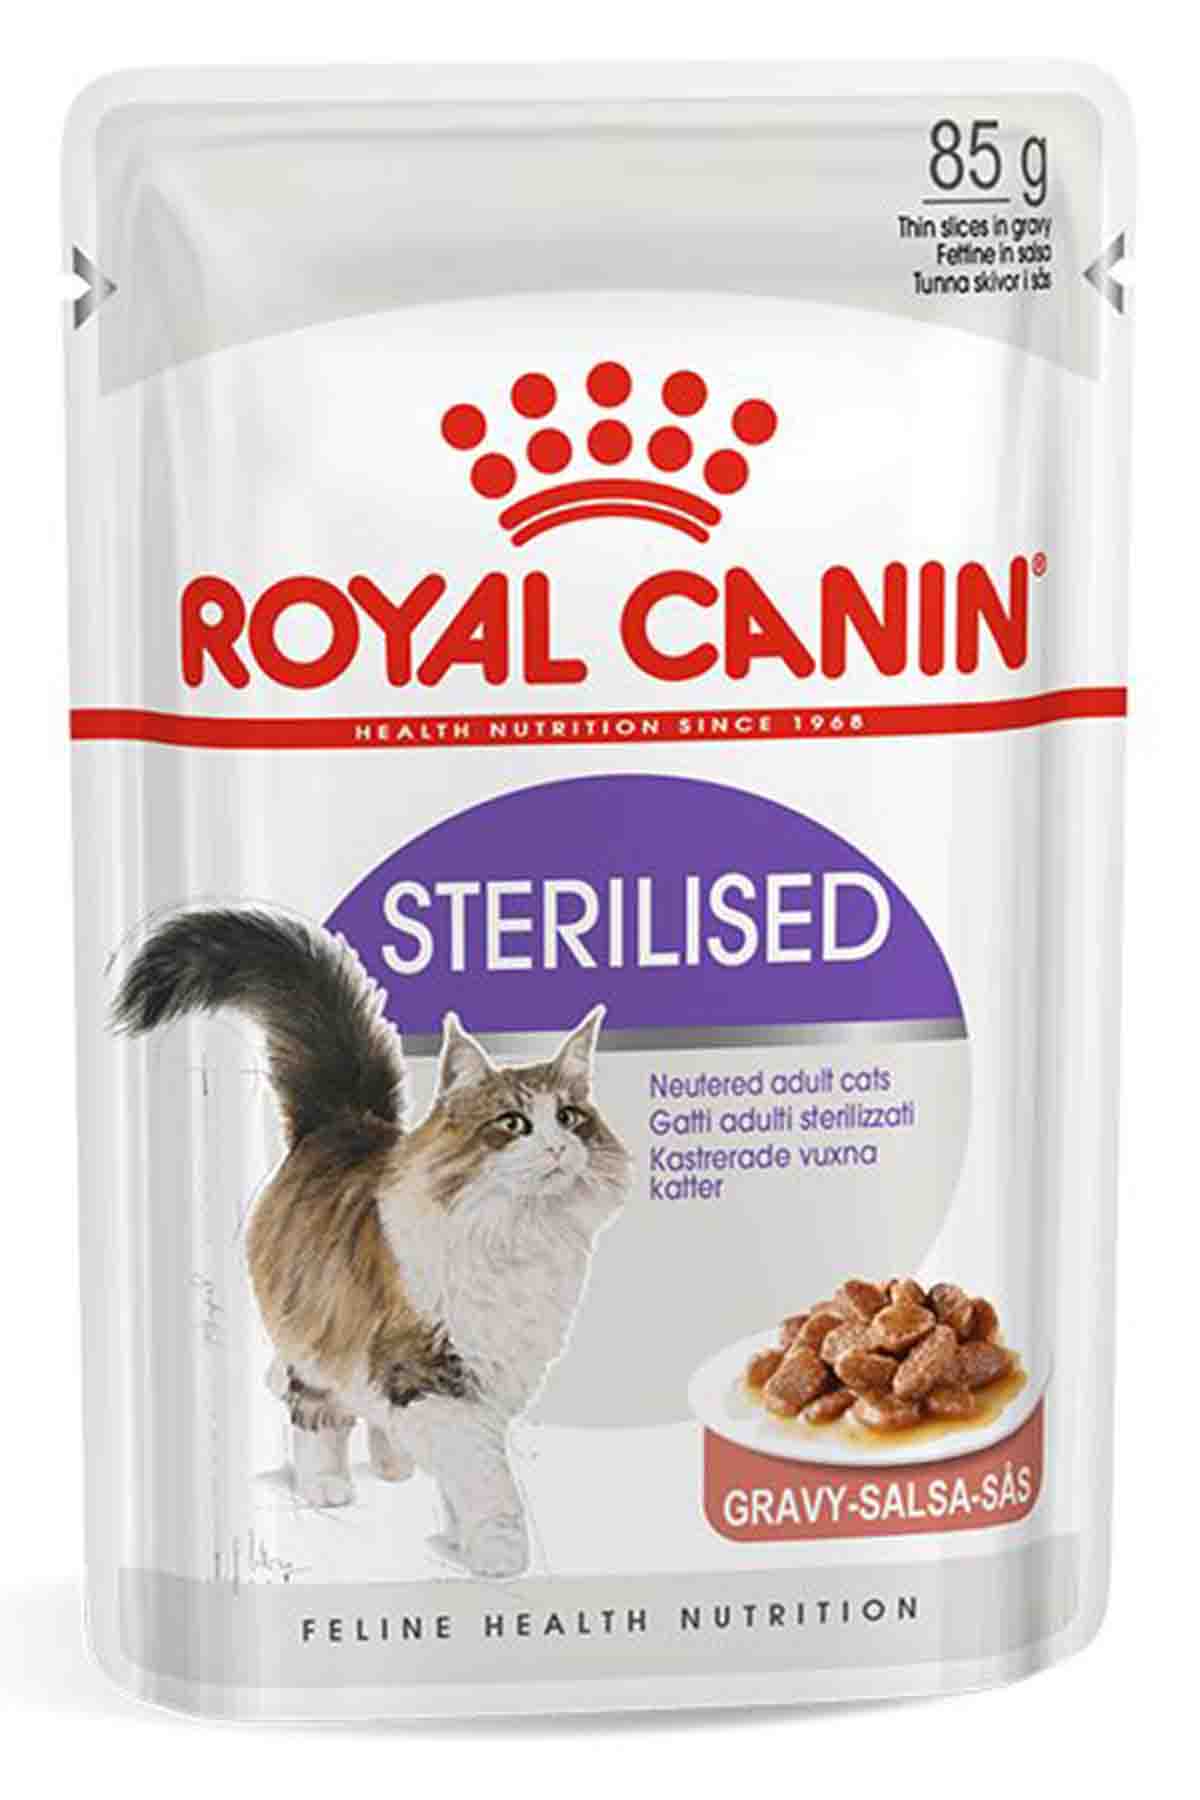 Royal Canin Gravy Kısırlaştırılmış Yetişkin Kedi Konservesi 85gr